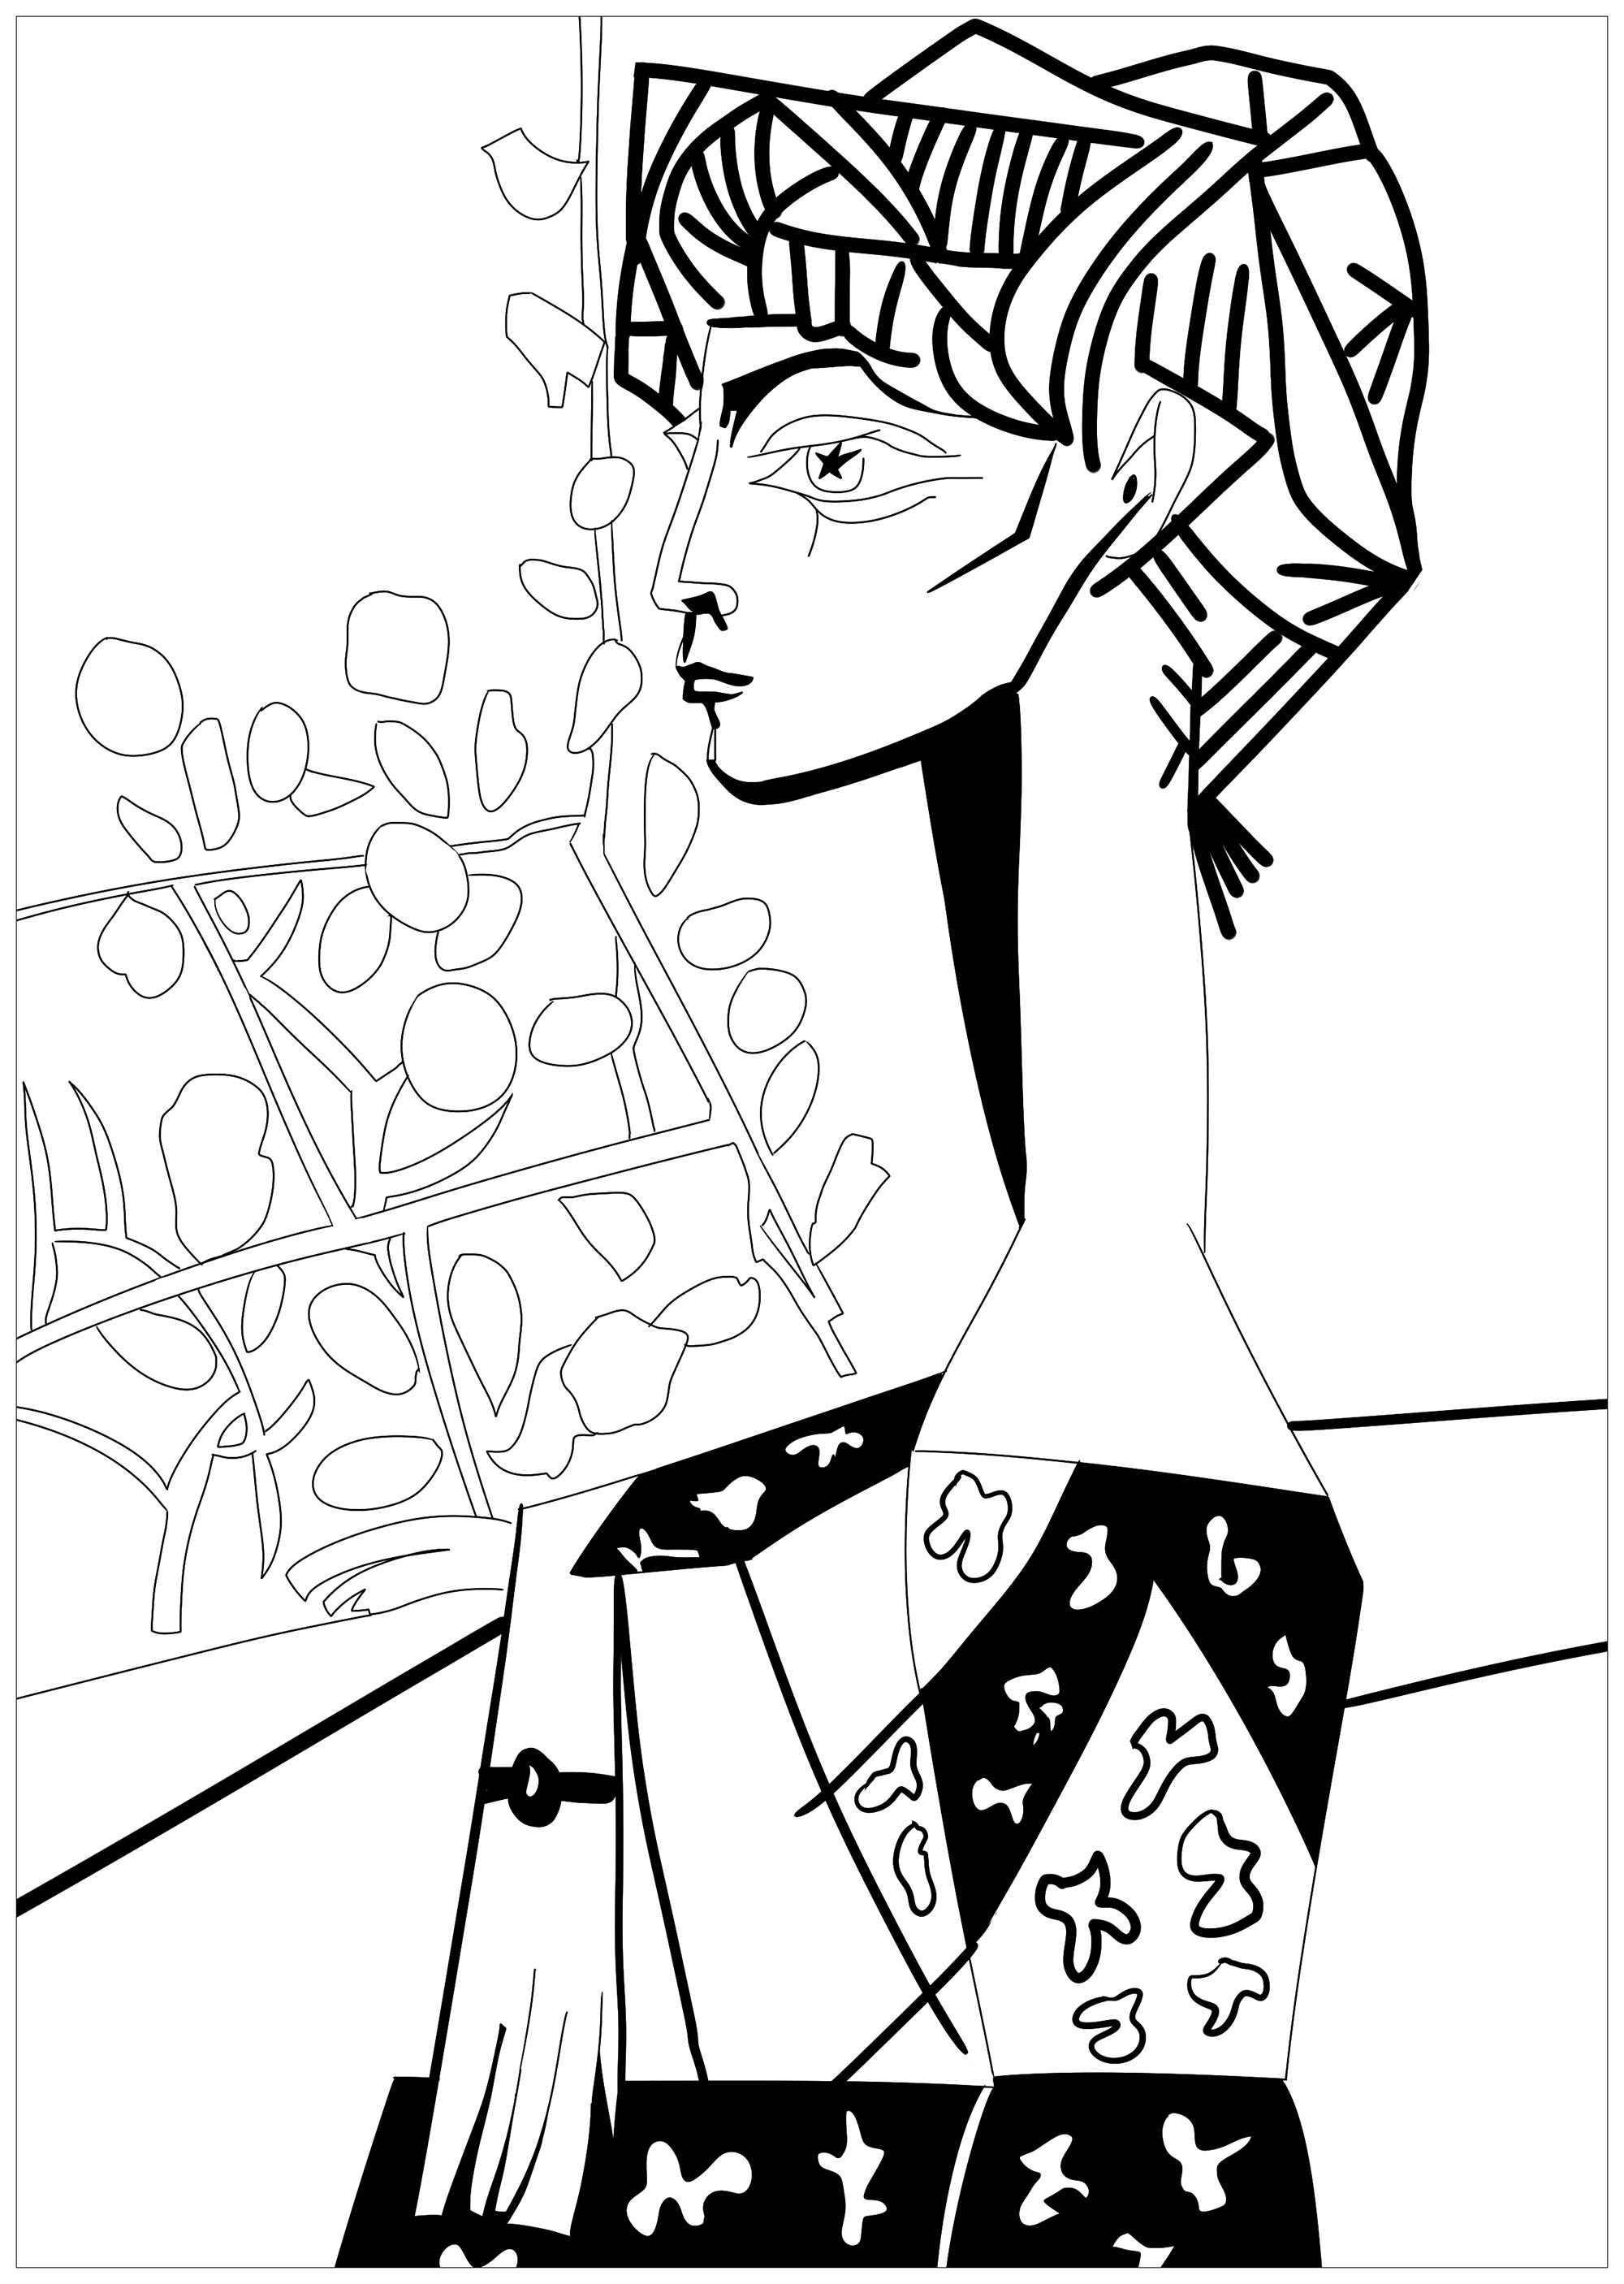 Página para colorear inspirada en una obra maestra de Pablo Picasso : Jacqueline con flores, Artista : Ji. M